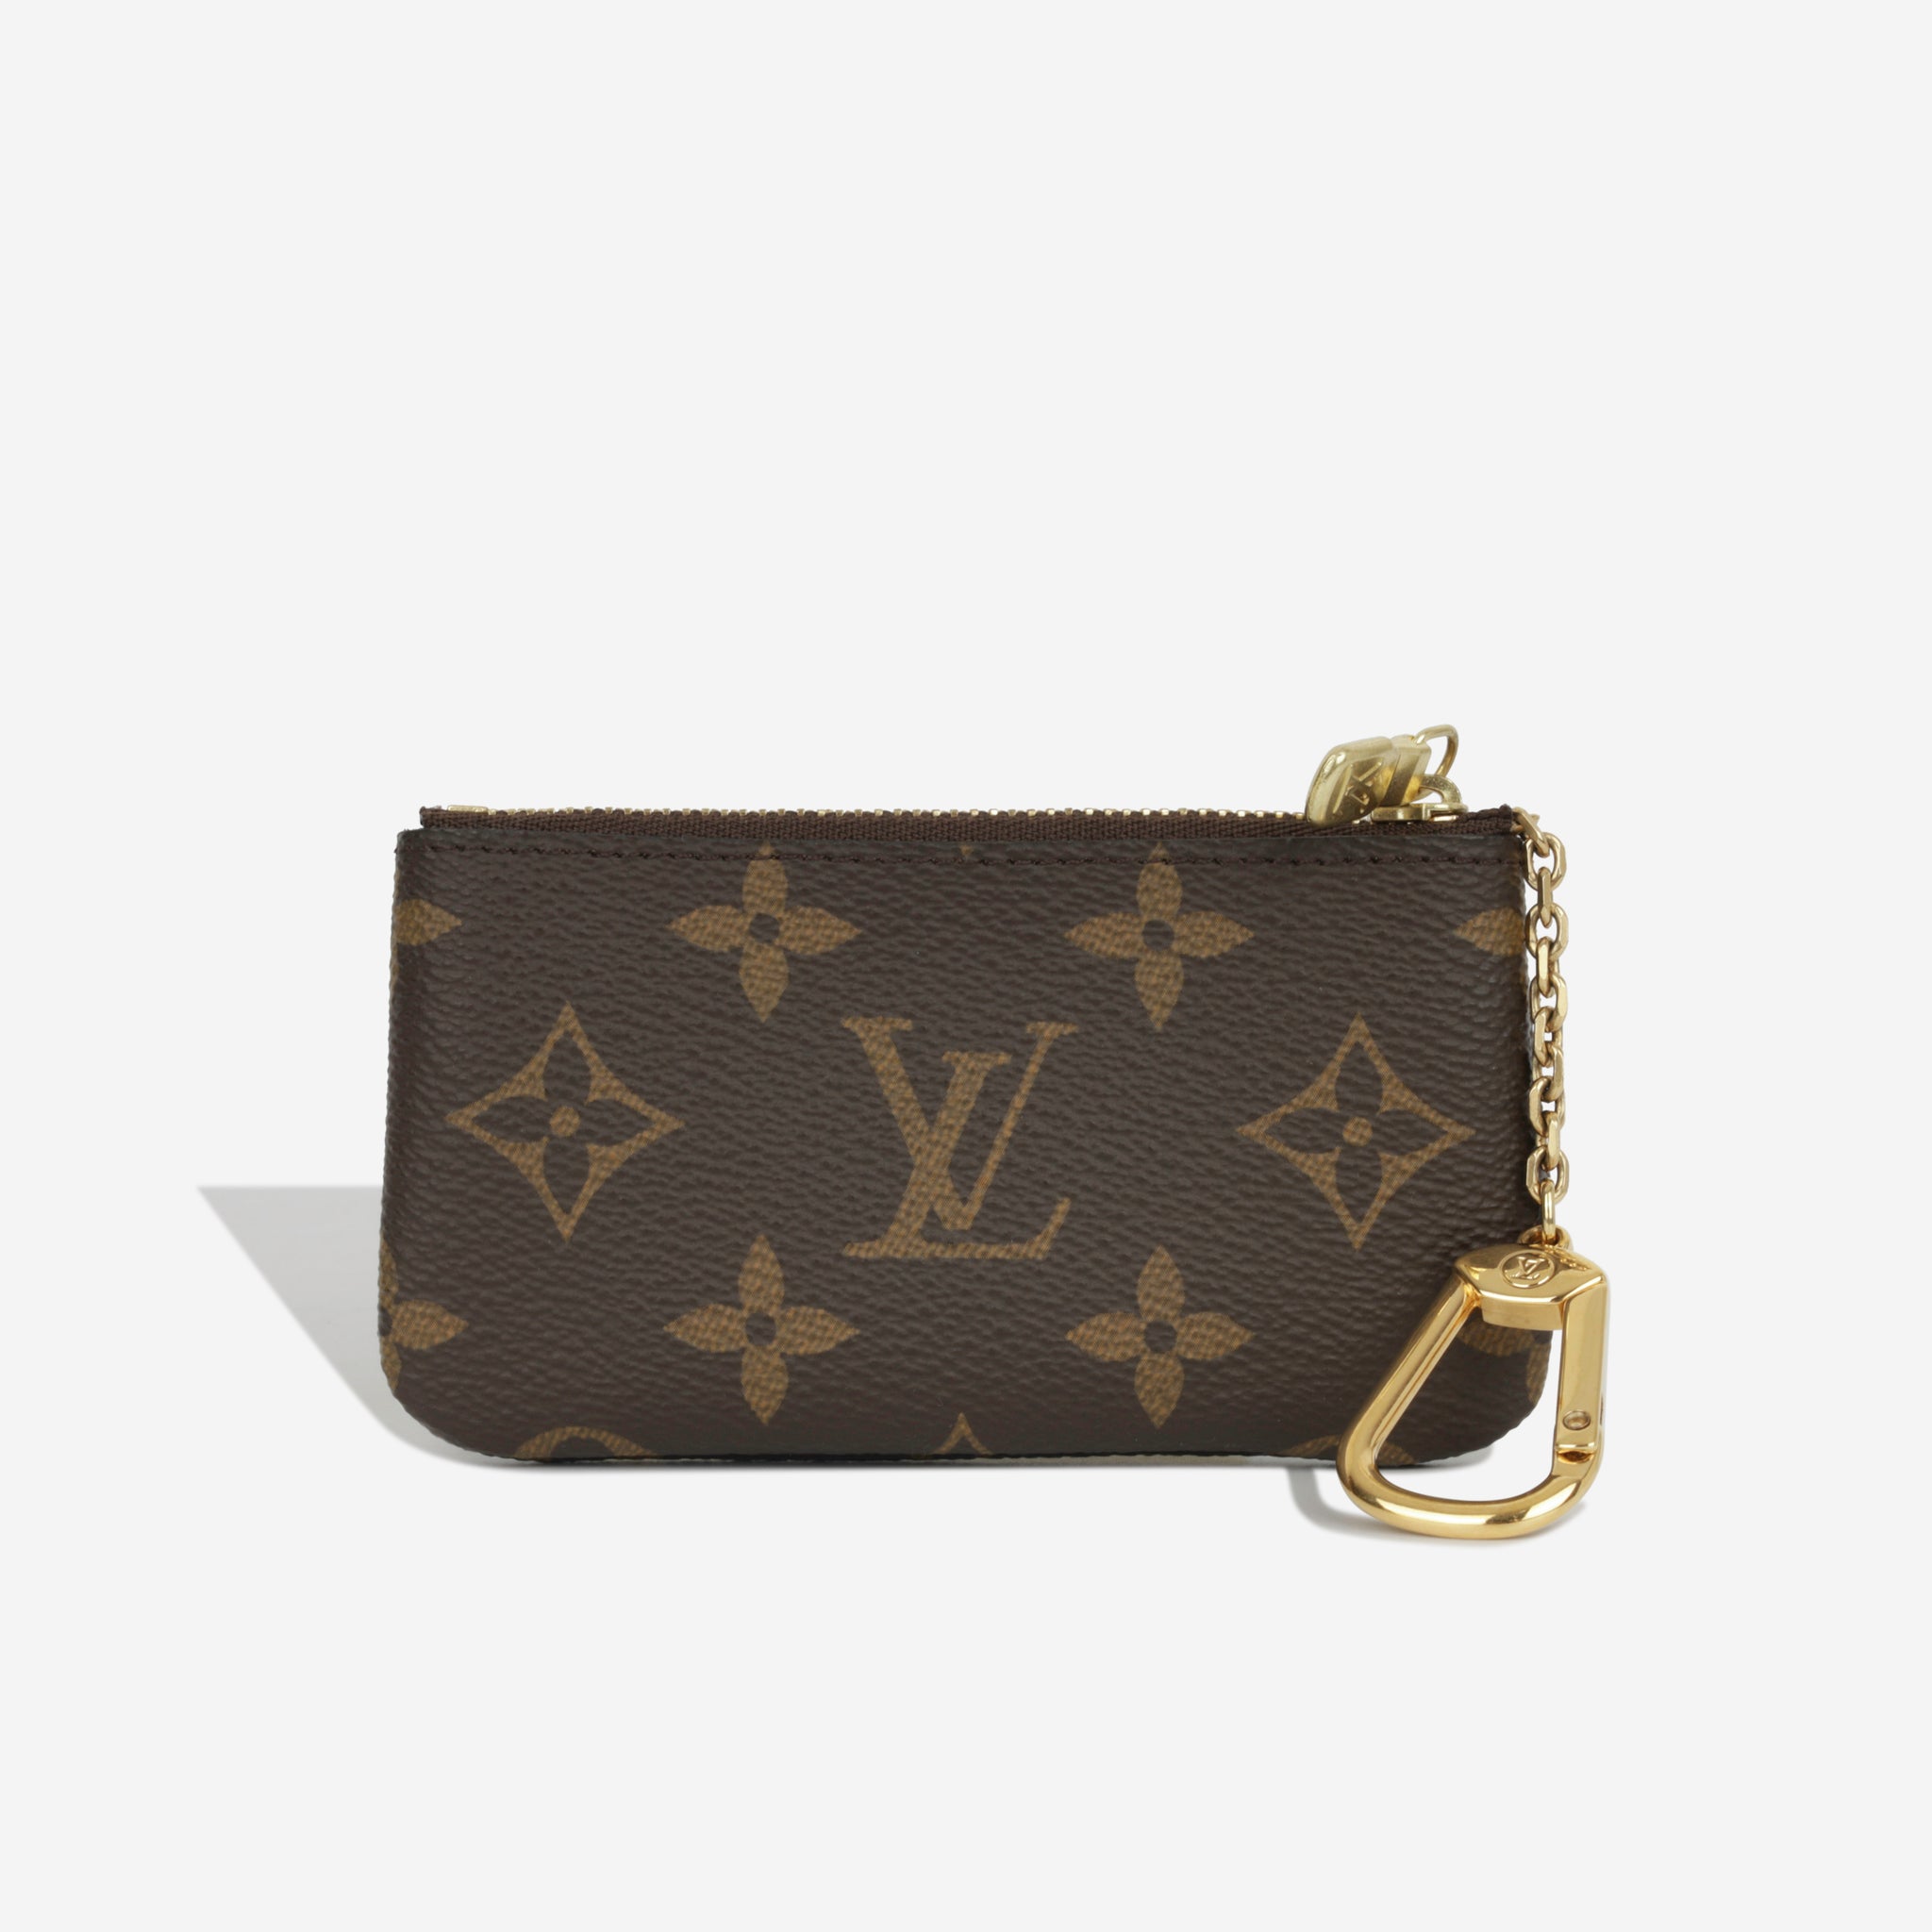 Louis Vuitton - Key Pouch - Monogram - Unused